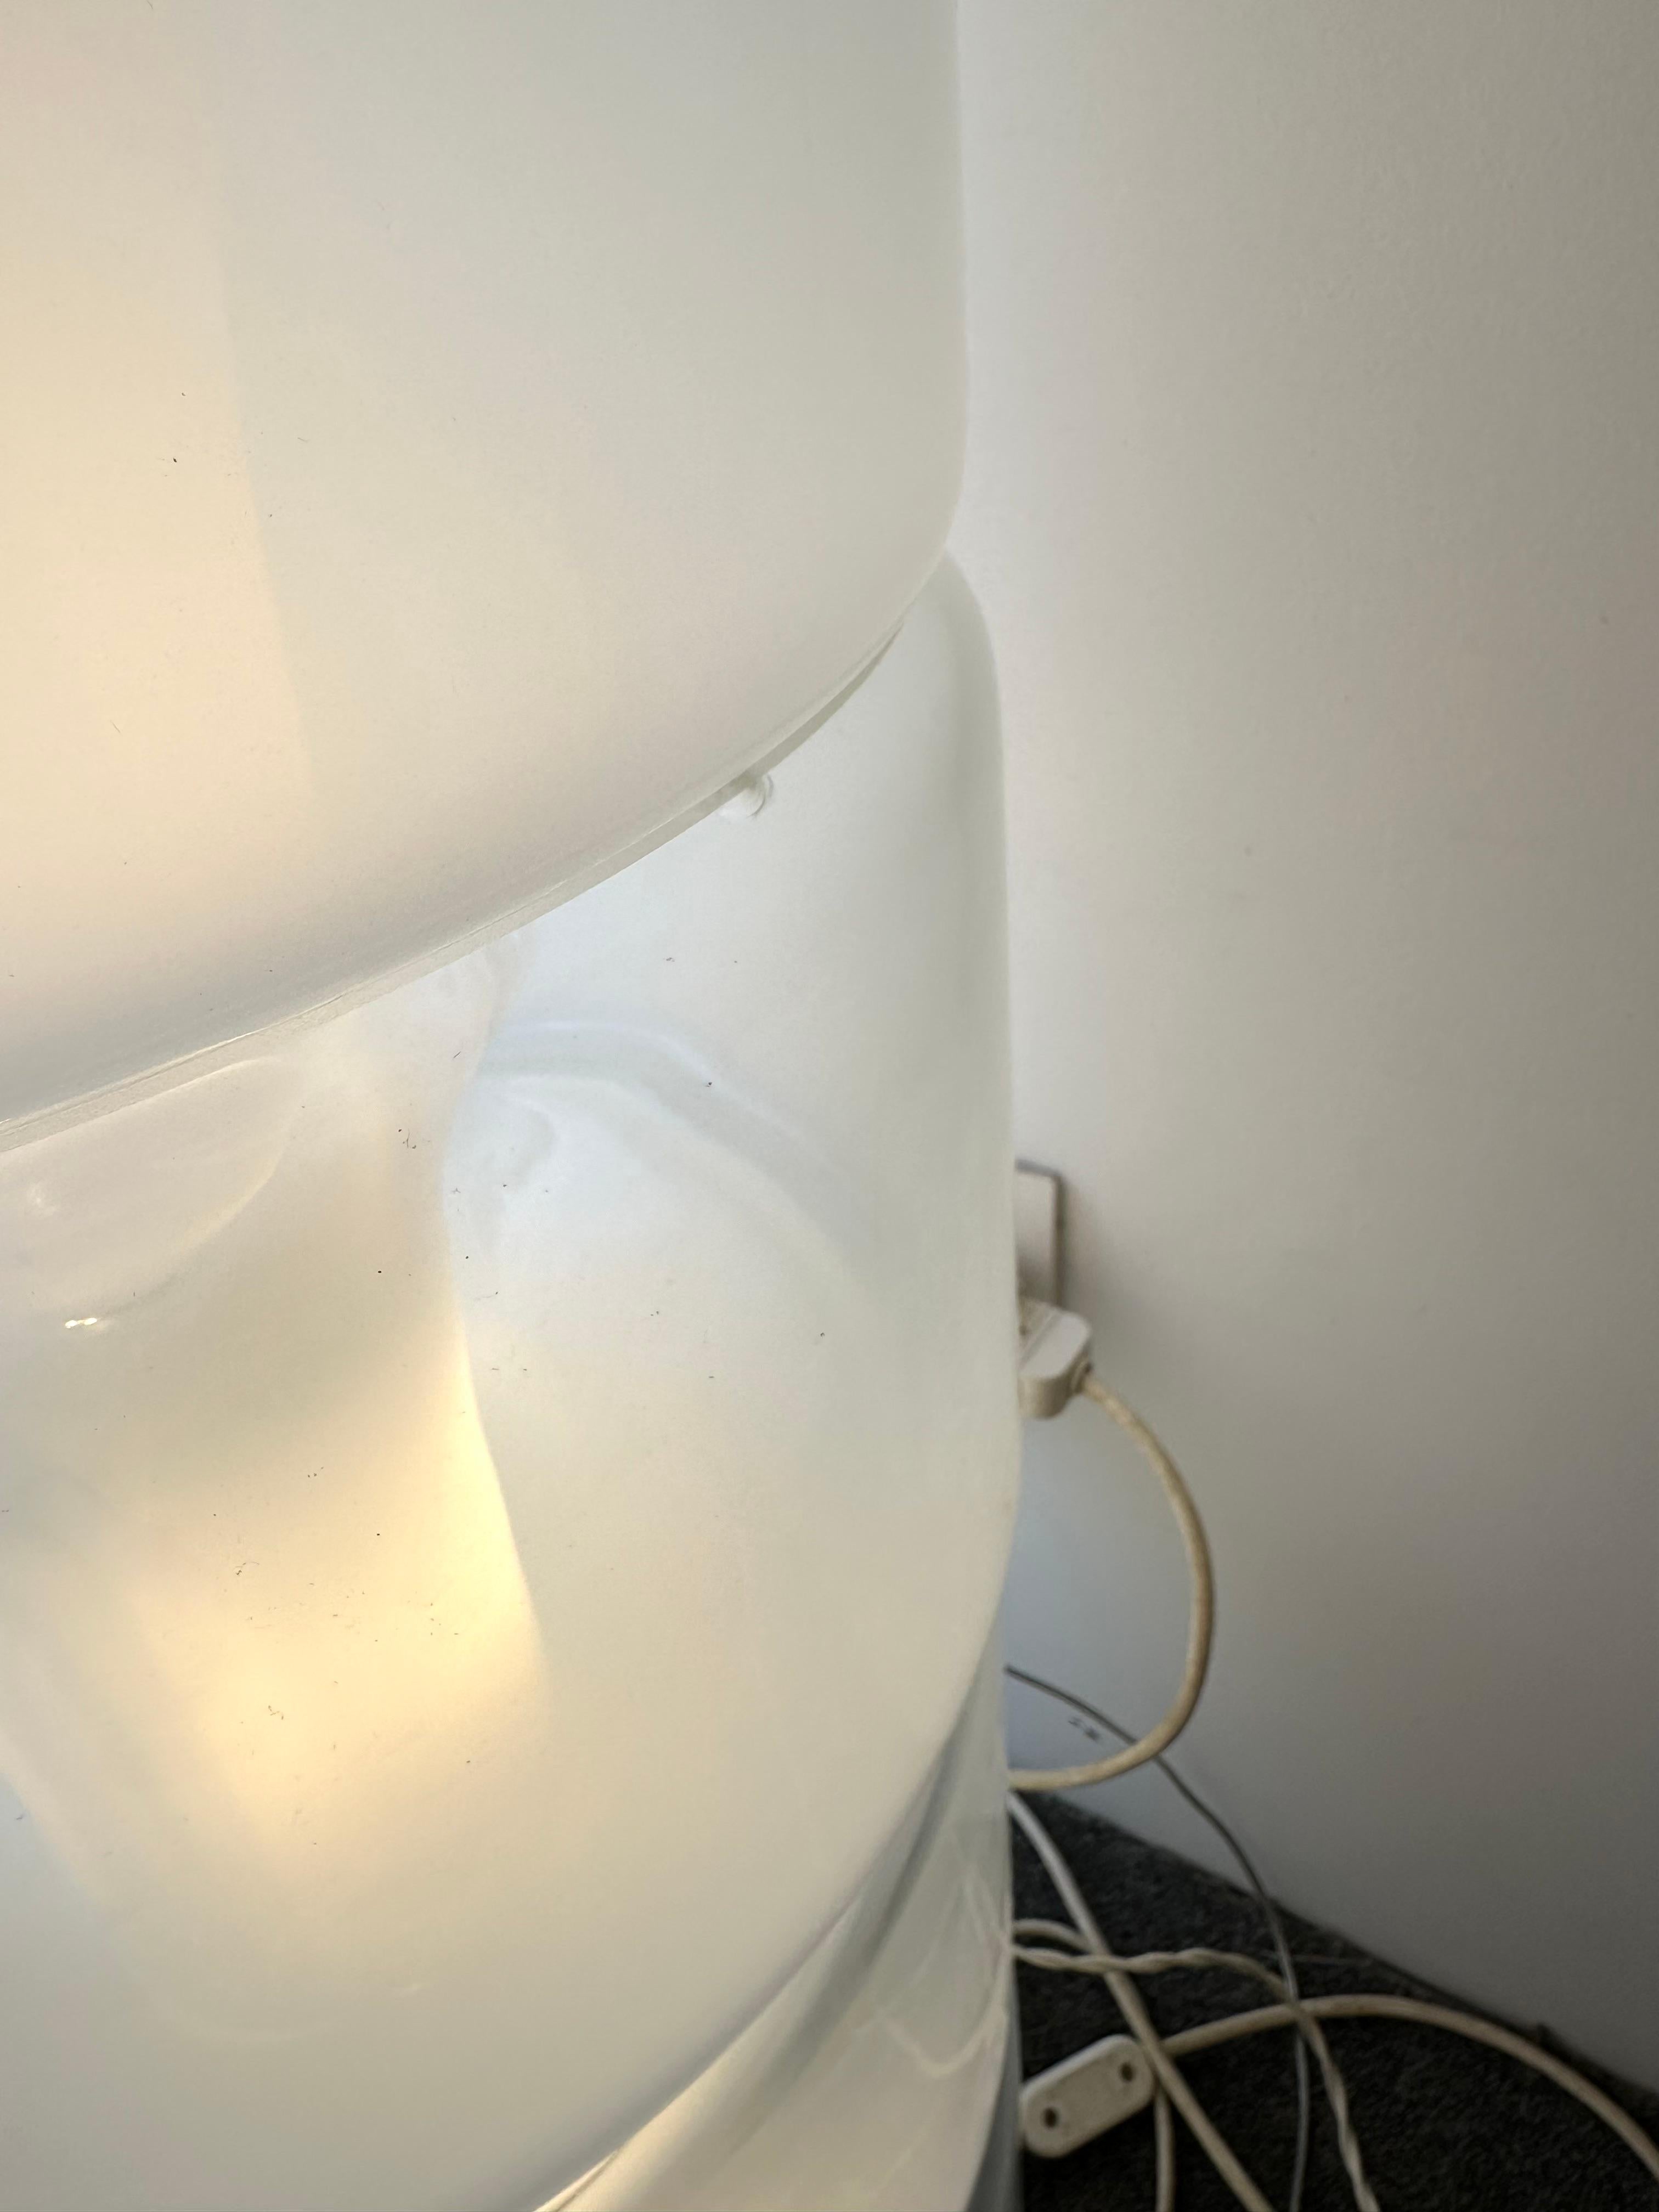 Mid-Century Modern Space Age Iconique lampadaire en verre de Murano soufflé Sfumato blanc fumé, base en laiton première édition modèle LT316 par Carlo Nason pour la manufacture Mazzega. Modèle des 7 grands éléments. Des fabricants italiens de renom